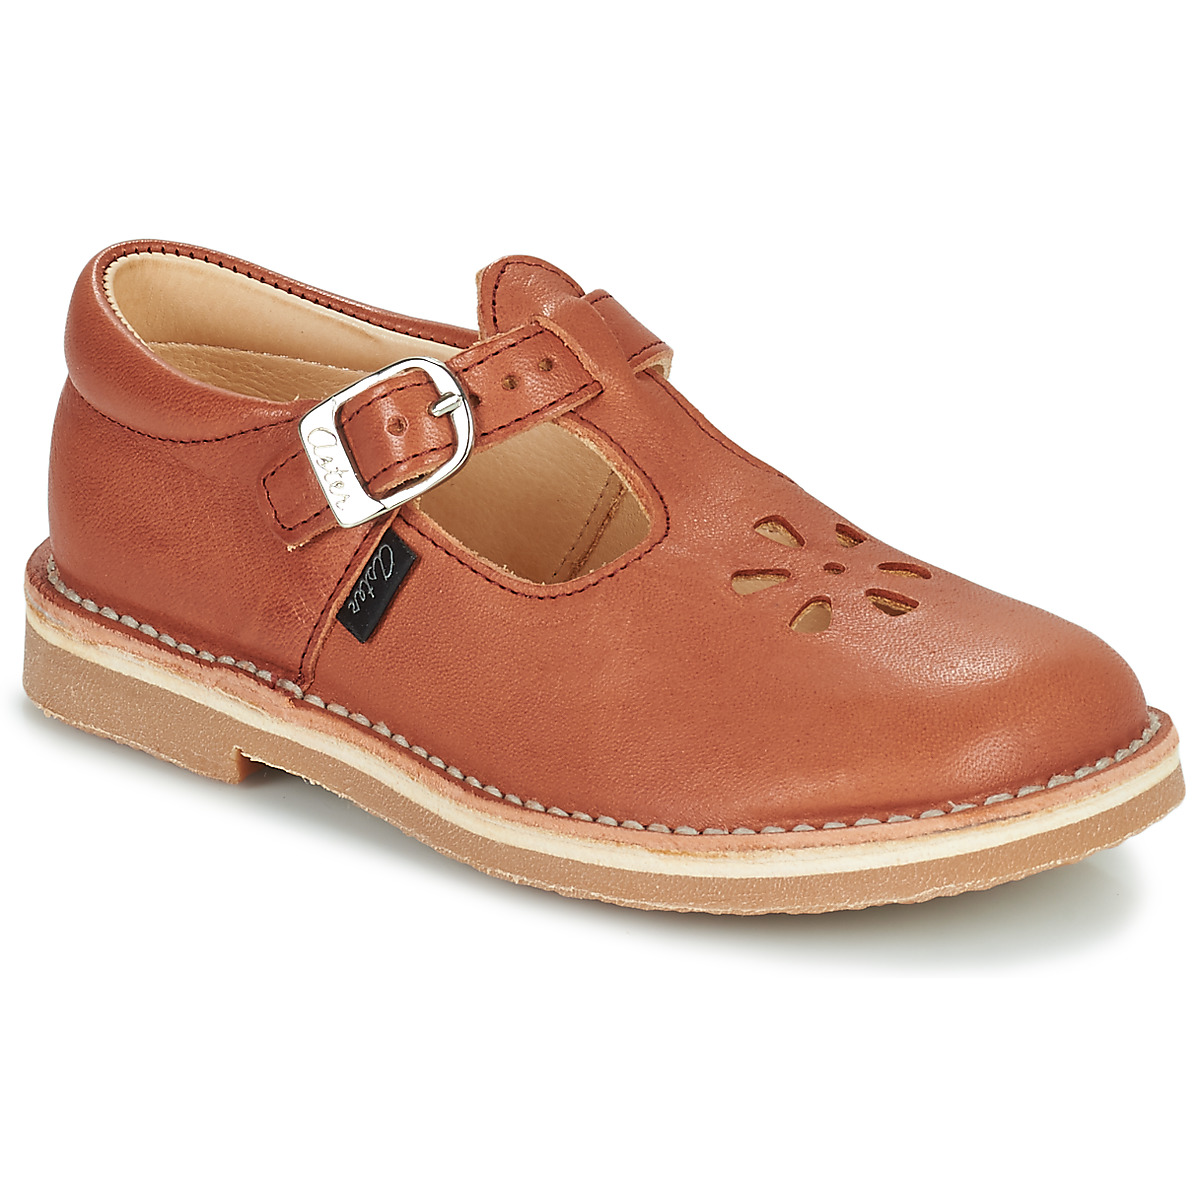 Schuhe Kinder Sandalen / Sandaletten Aster DINGO Rot